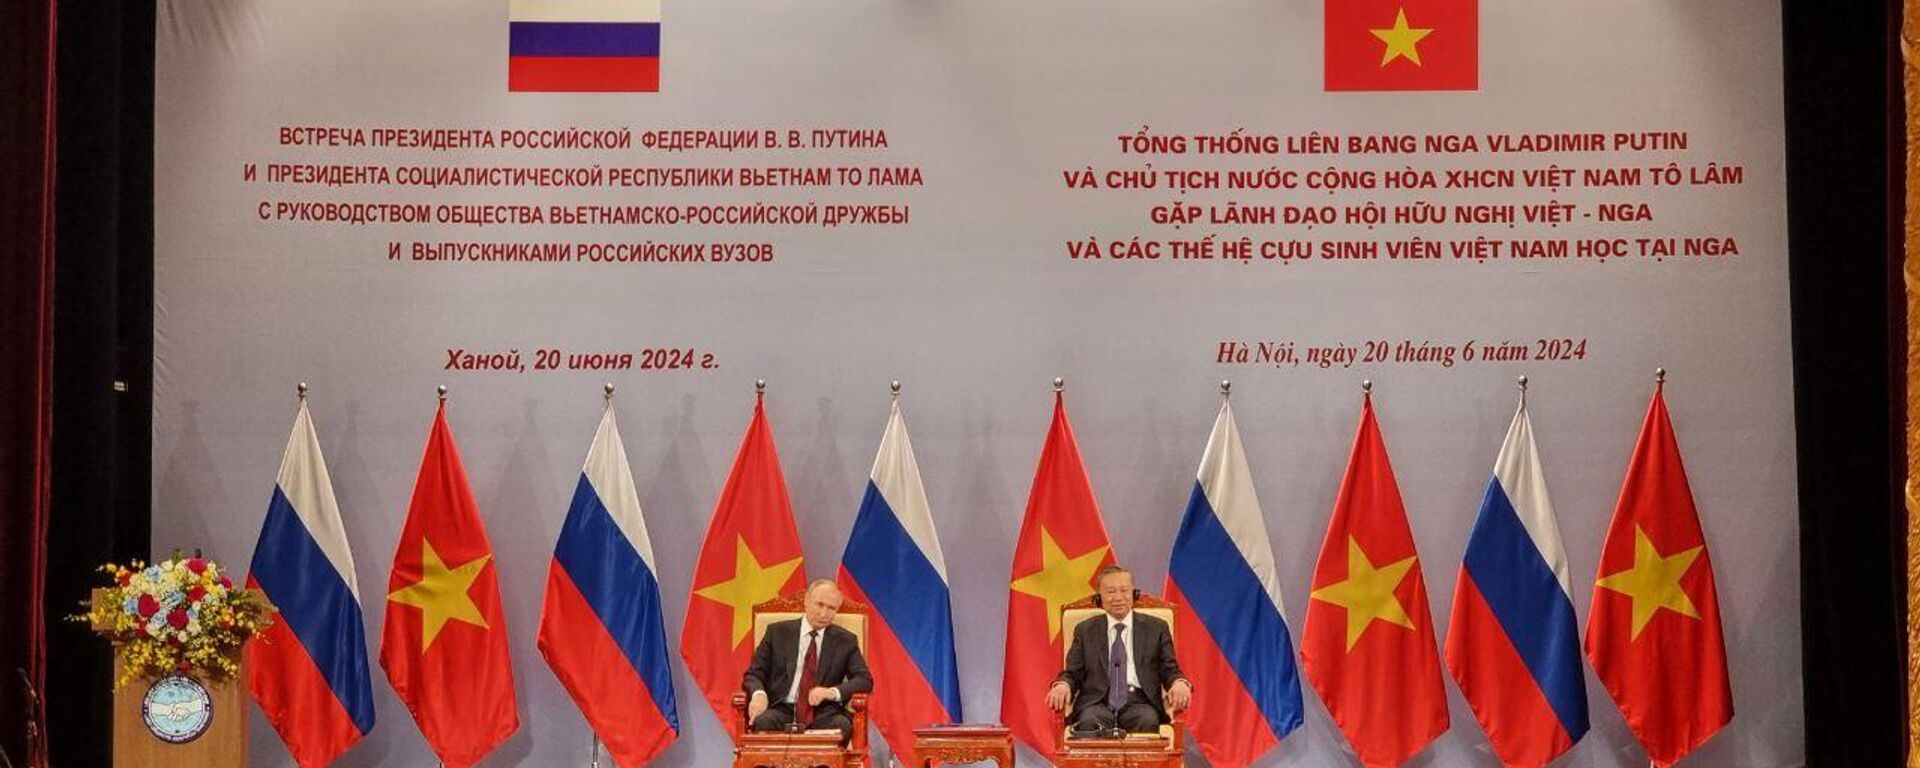 Tổng thống Vladimir Putin gặp gỡ lãnh đạo lãnh đạo Hội hữu nghị Việt Nam và các thế hệ cựu sinh viên Việt Nam từng du học tại Nga - Sputnik Việt Nam, 1920, 20.06.2024